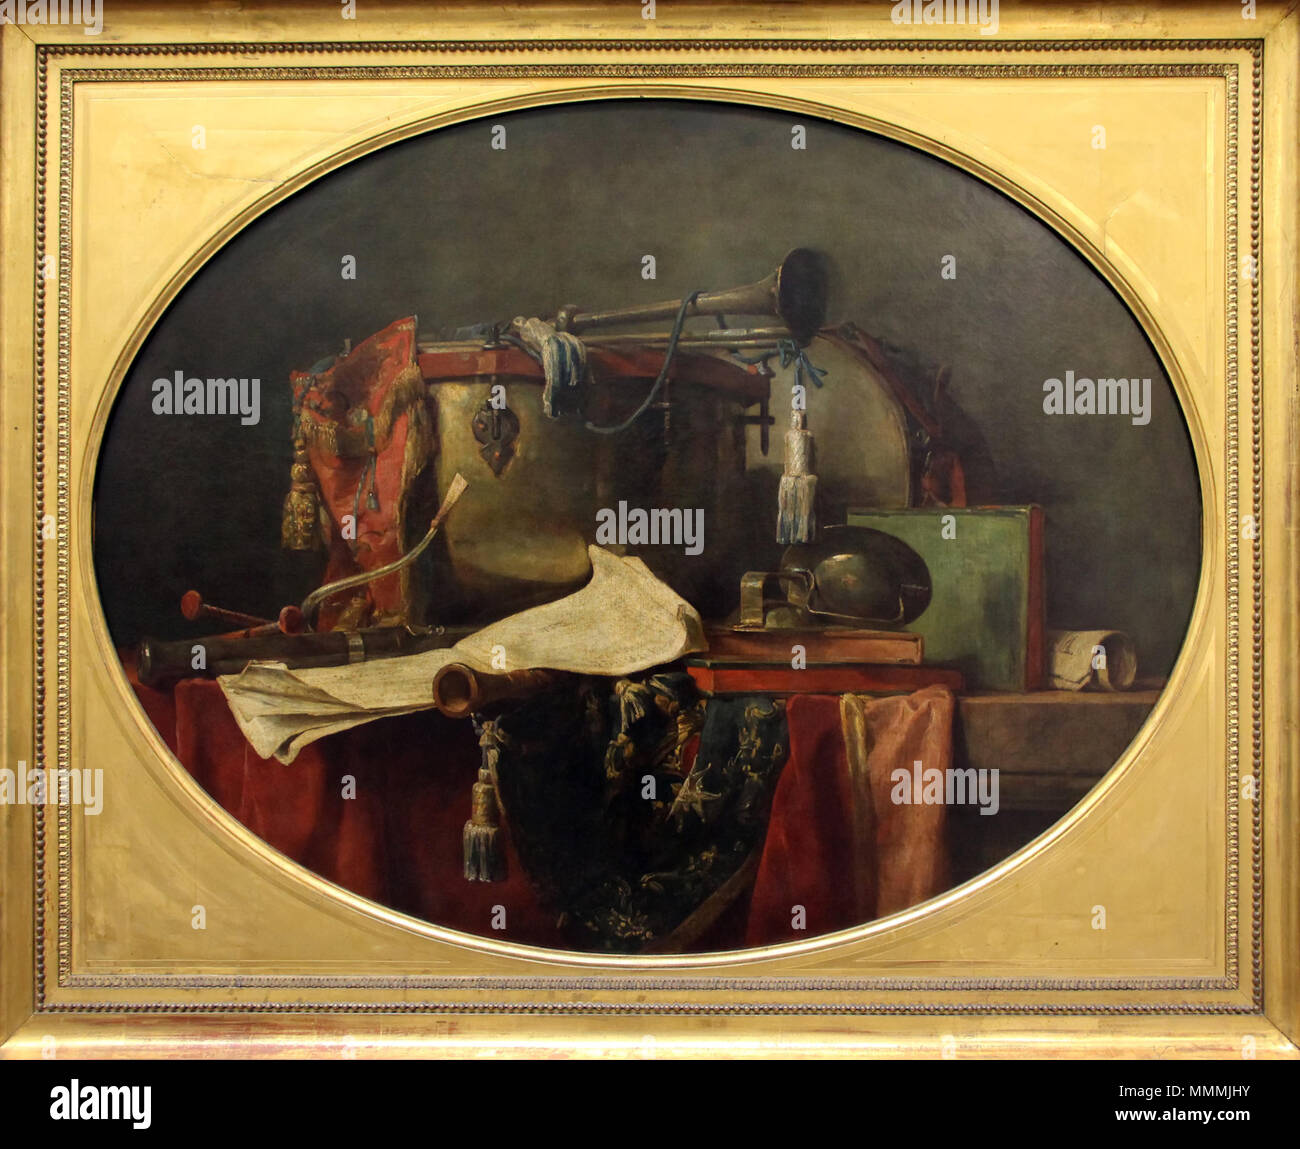 . Englisch: Gemälde von Chardin im Louvre Q 21023868. Vom 3. Dezember 2013, 16:45:24. Sailko Chardin, Gli strumenti della Musica militare, 1767 Stockfoto